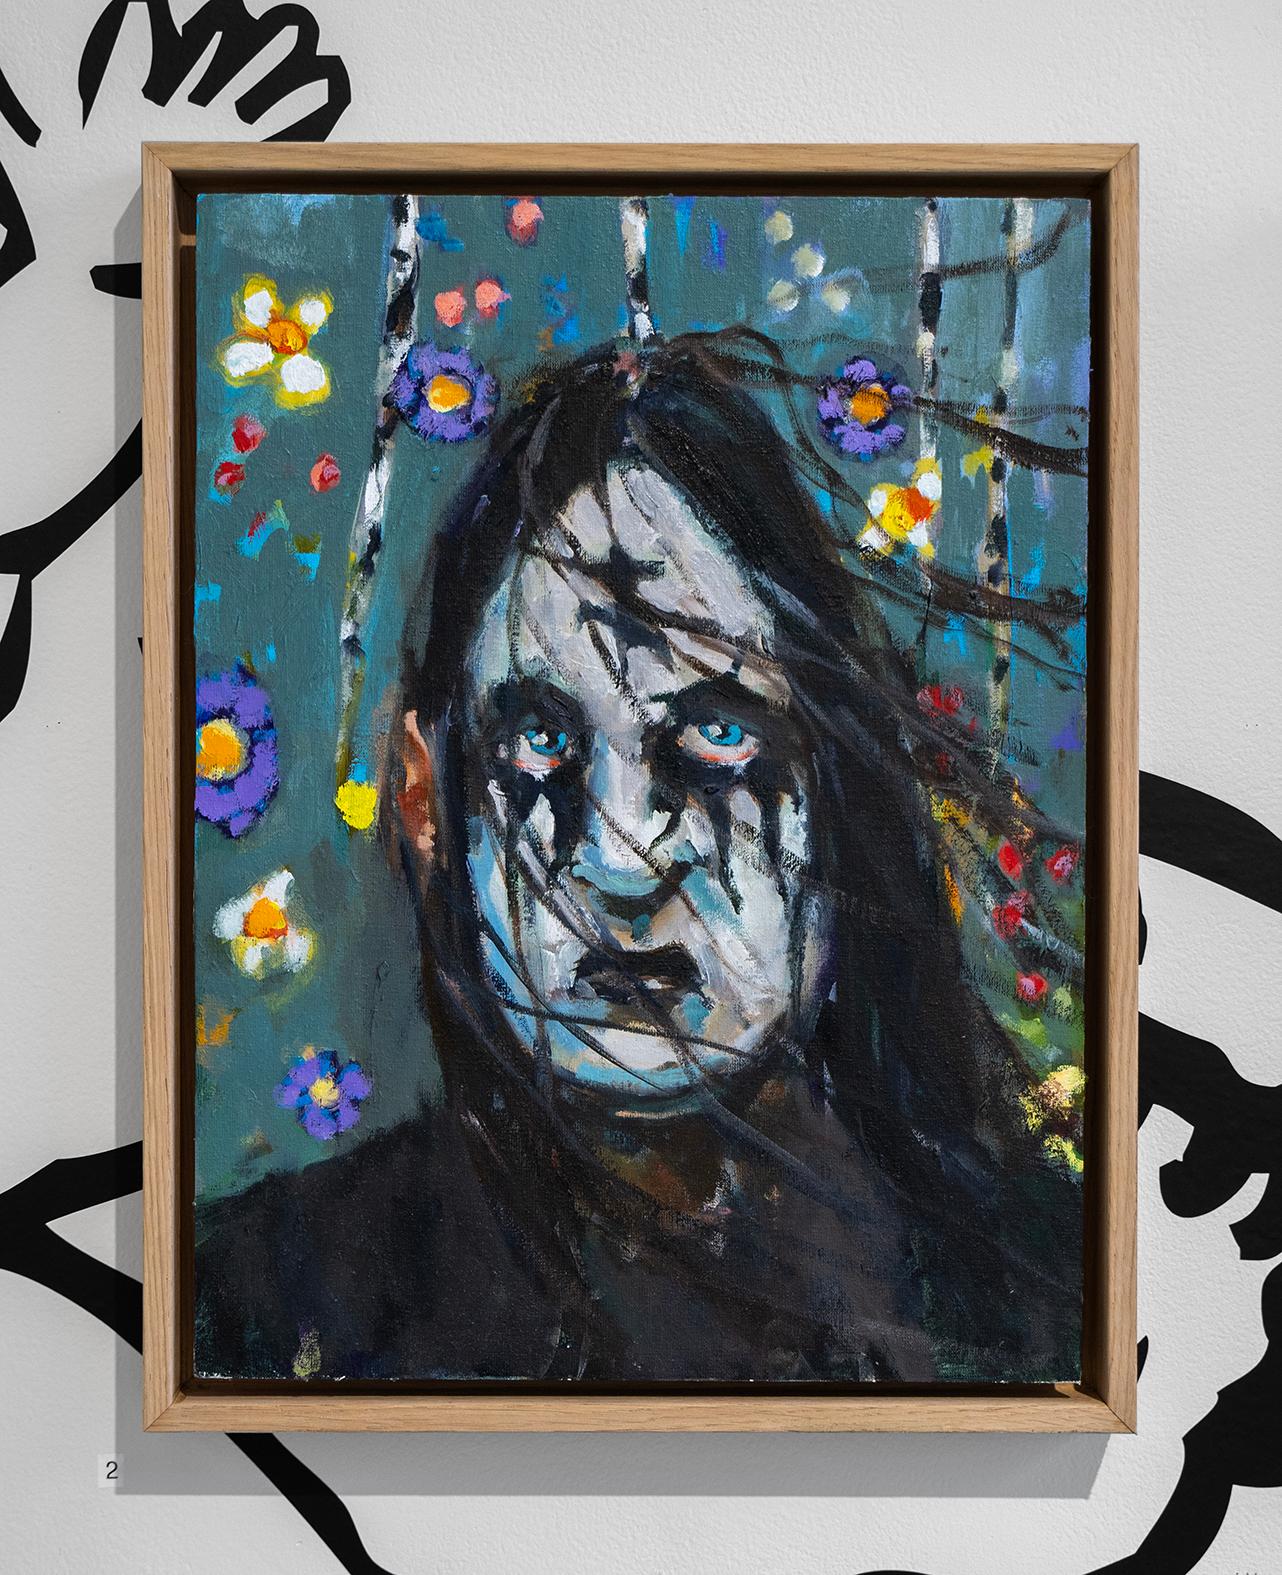 Endre Aalrust Portrait Painting - Metal fan (Blue)